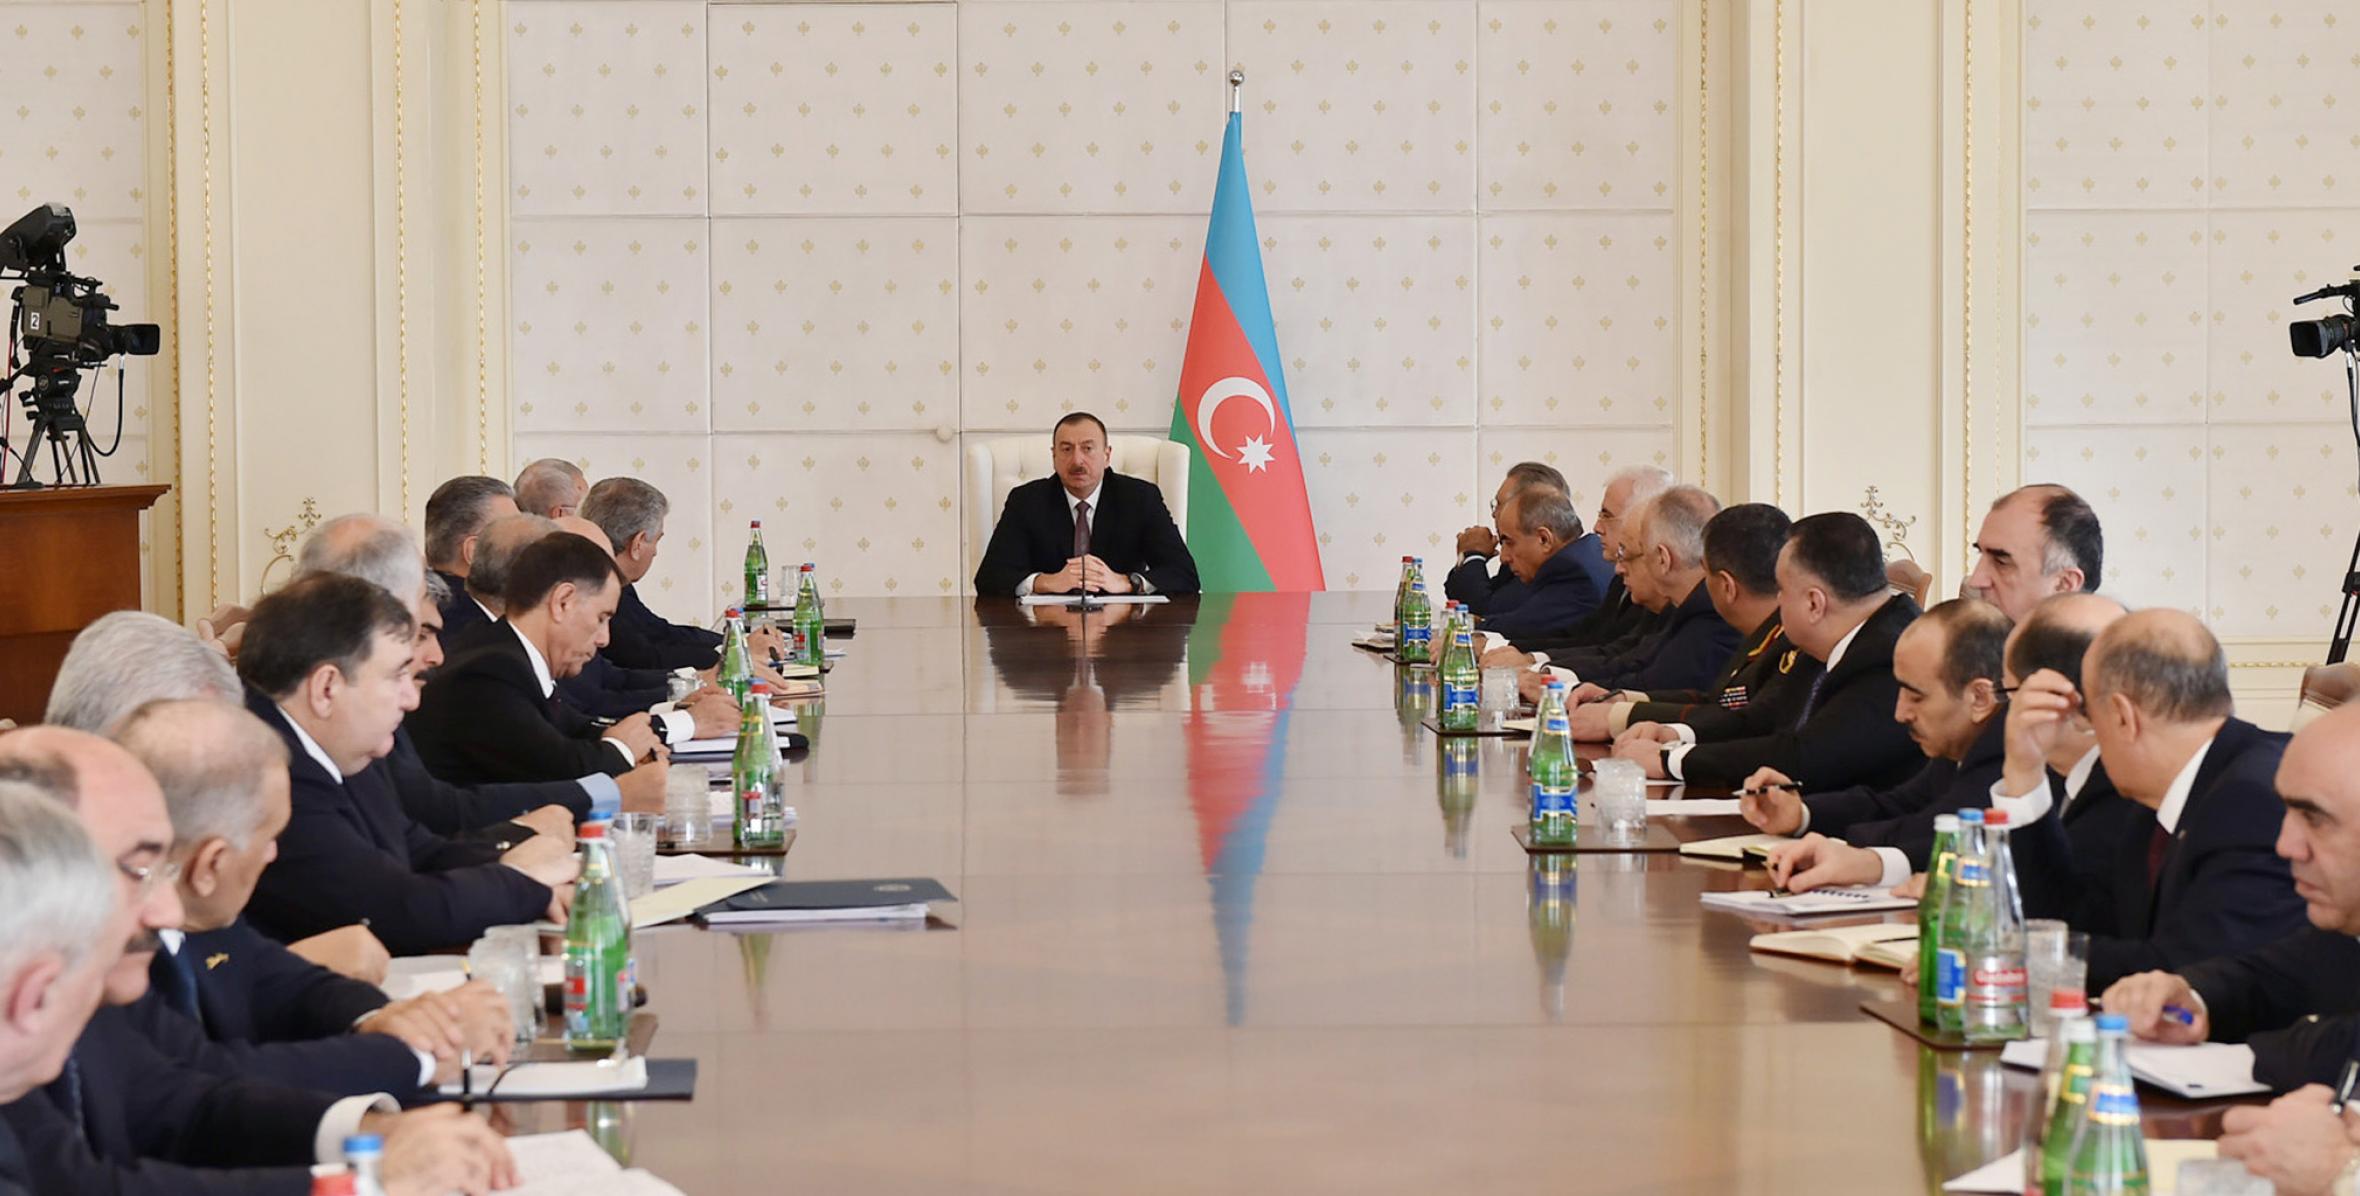 Заключительная речь Ильхама Алиева на заседании Кабинета Министров, посвященном итогам социально-экономического развития в первом квартале 2015 года и предстоящим задачам